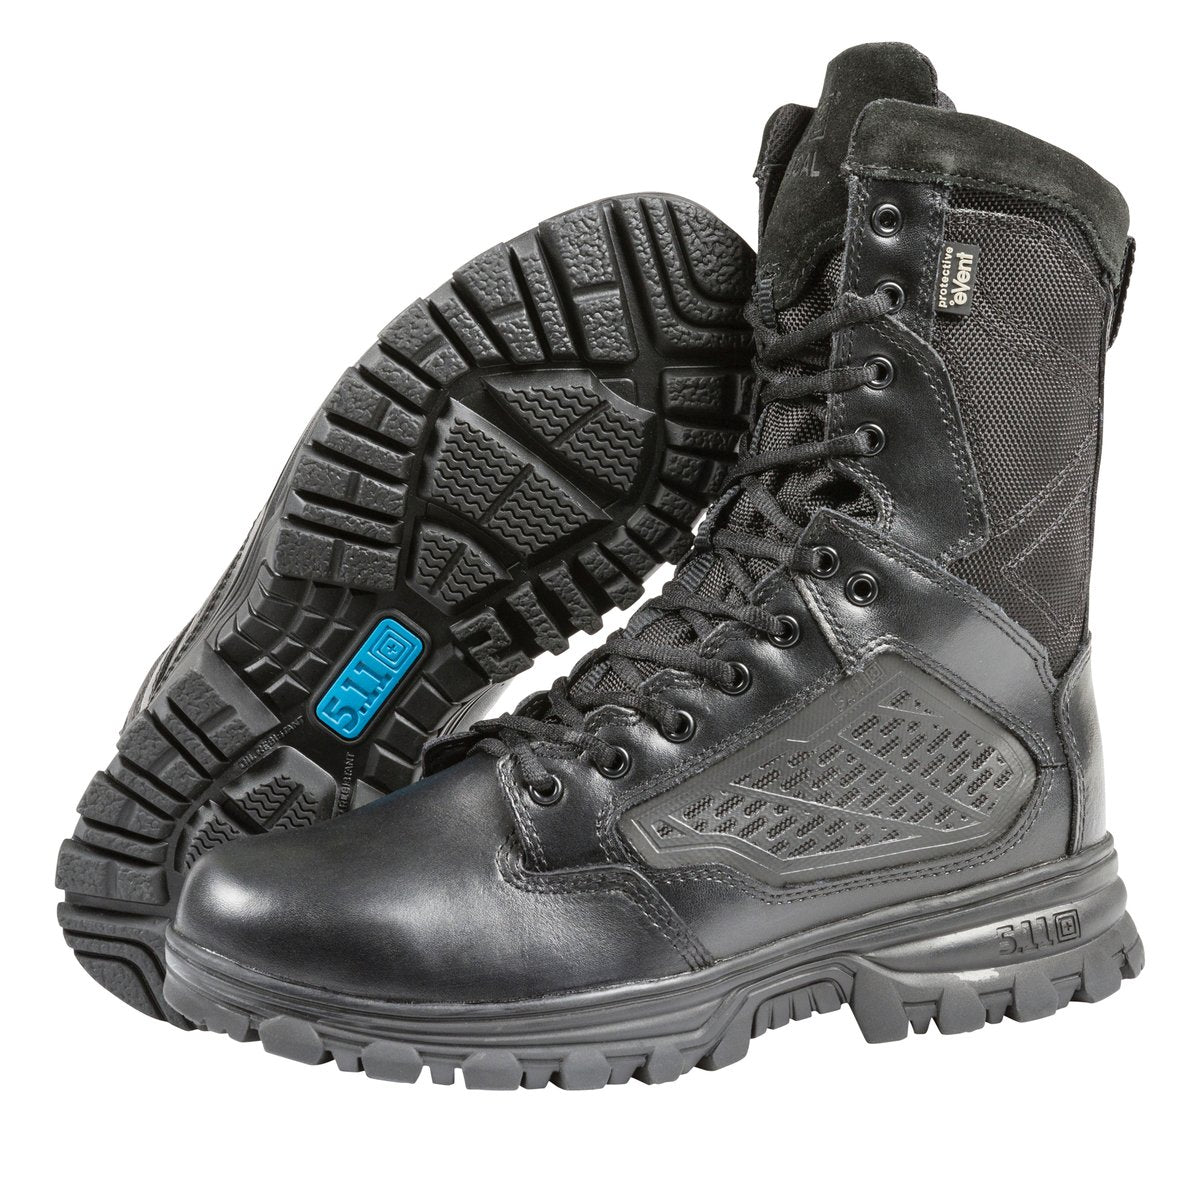 5.11 Tactical EVO Side-Zip Waterproof 8 Inch Boots 12312 Footwear 5.11 Tactical 5 US Tactical Gear Supplier Tactical Distributors Australia